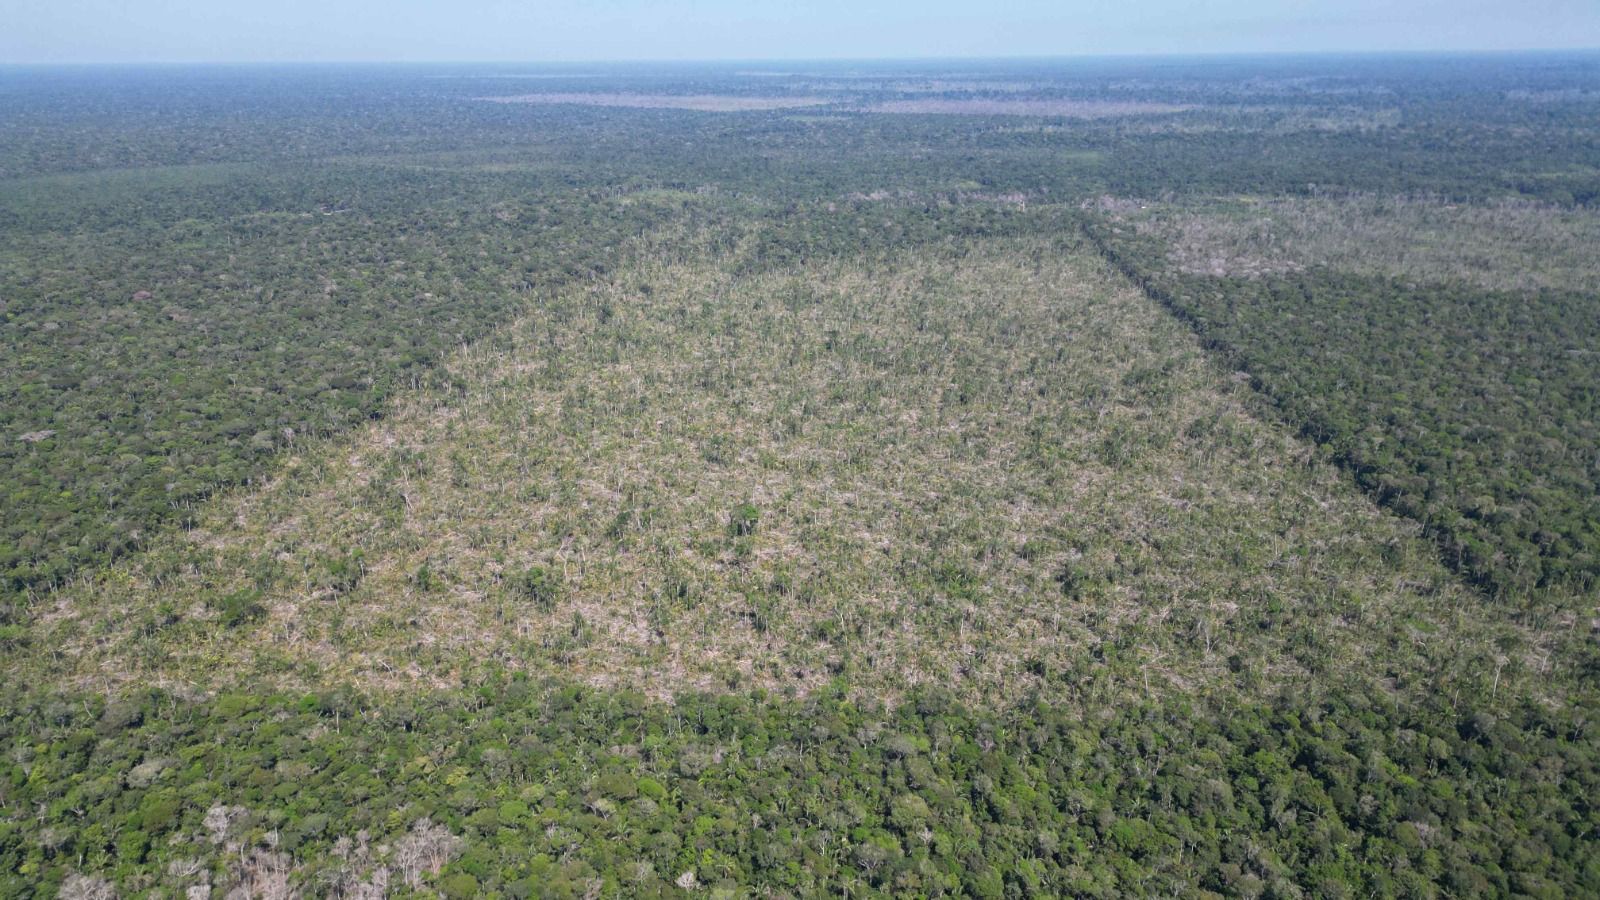 Desmatamento no Amazonas cai 81,2% em julho